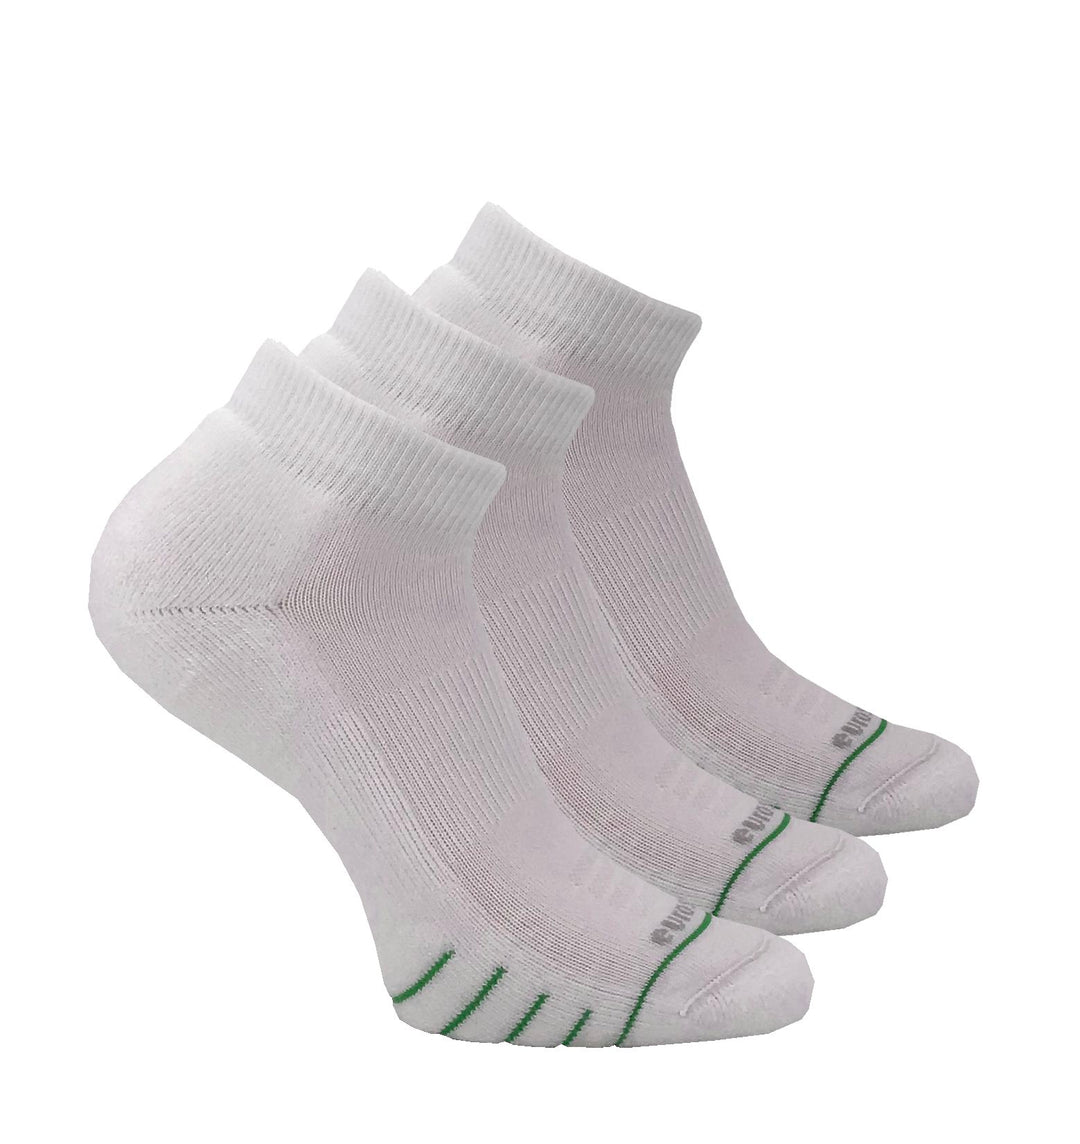 Court Silver Low Cut Socks - 3809